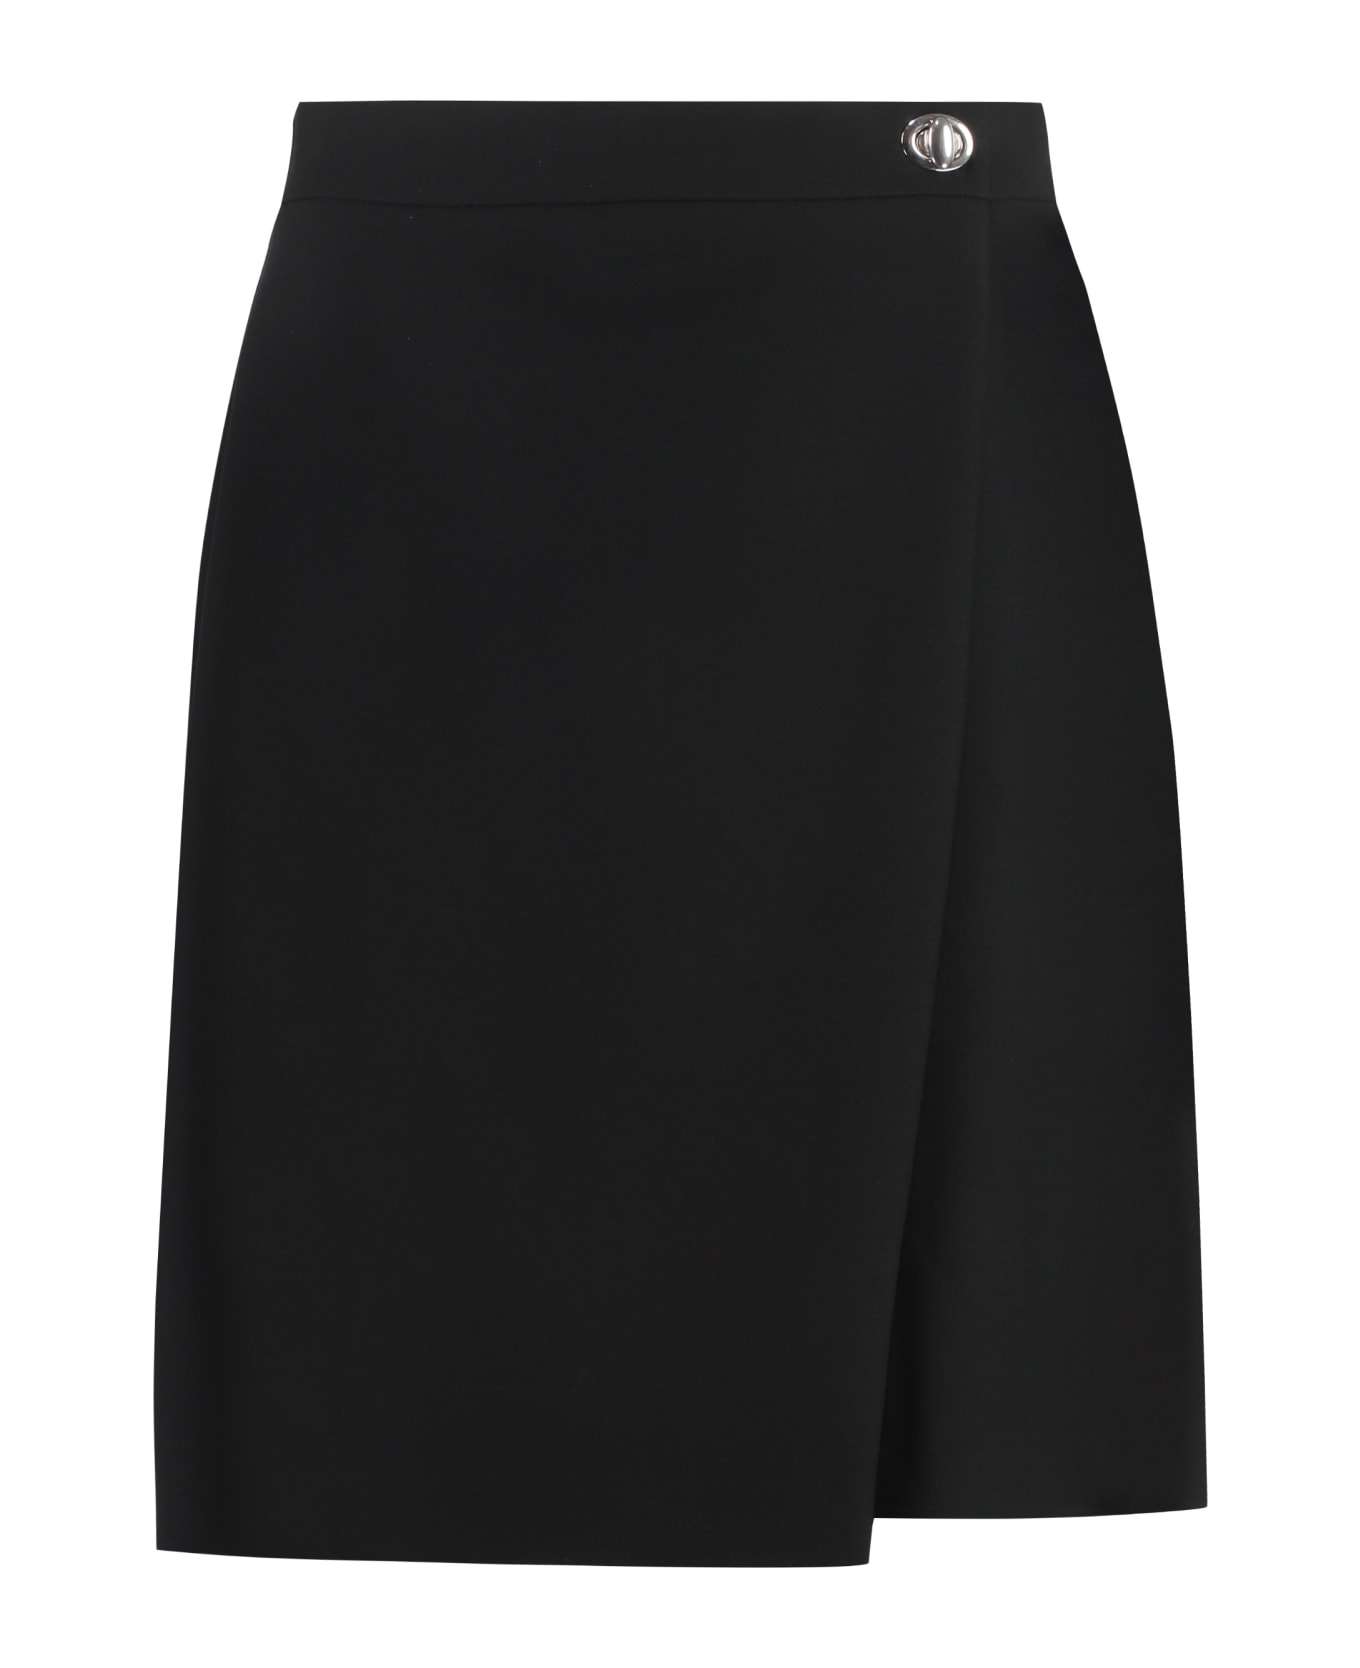 Hugo Boss Asymmetric Wrap Skirt - black スカート